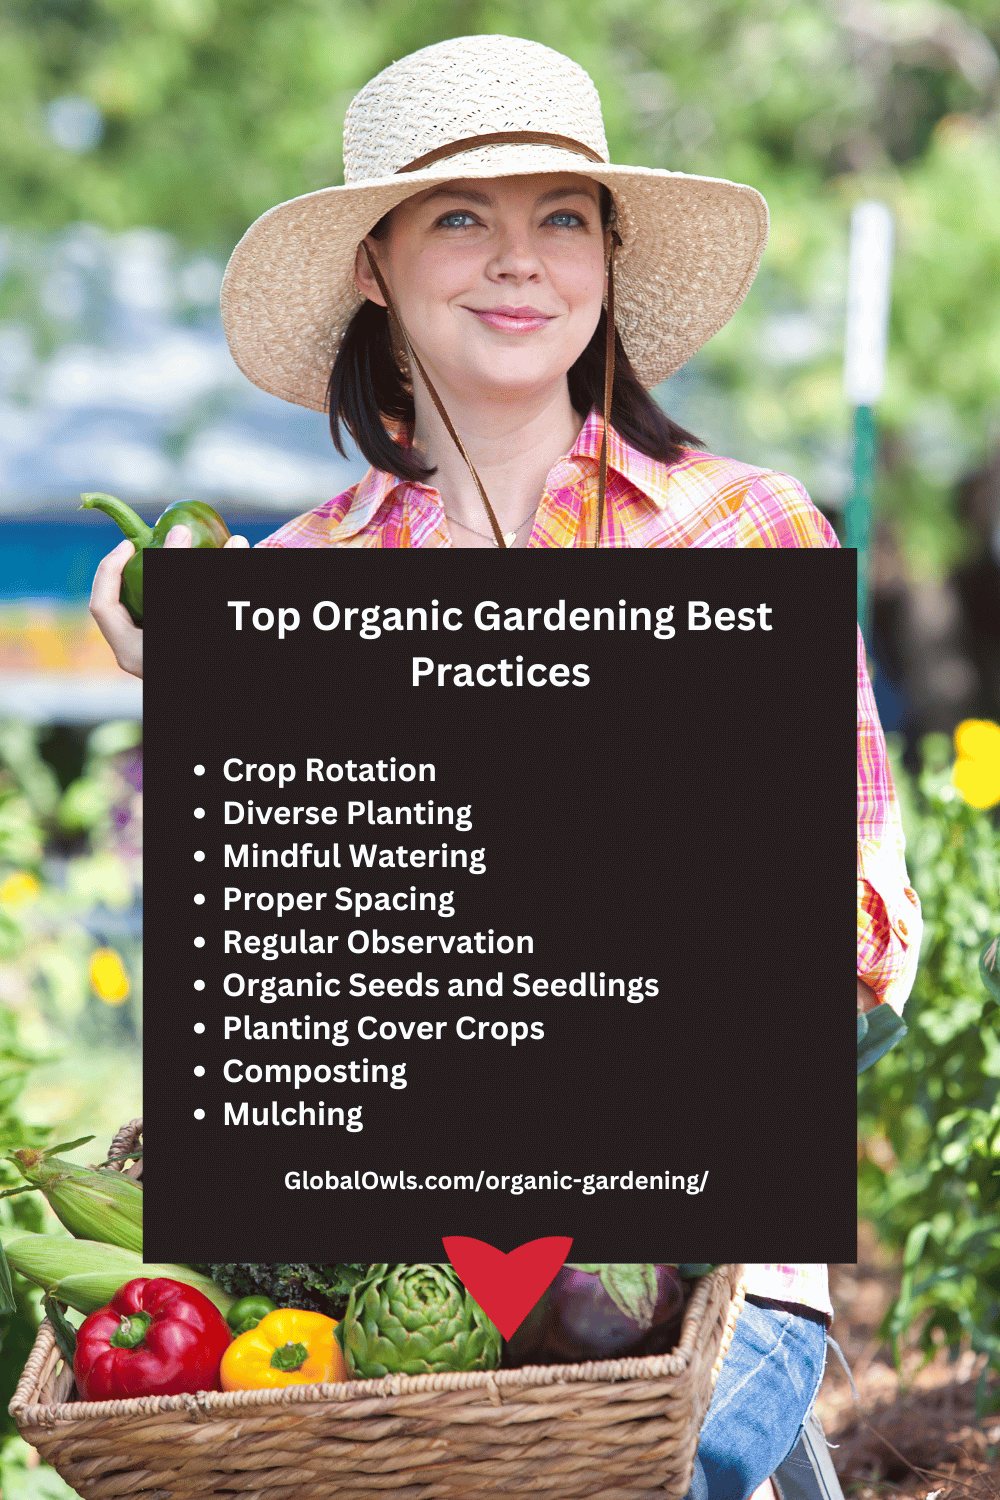 Top Organic Gardening Best Practices